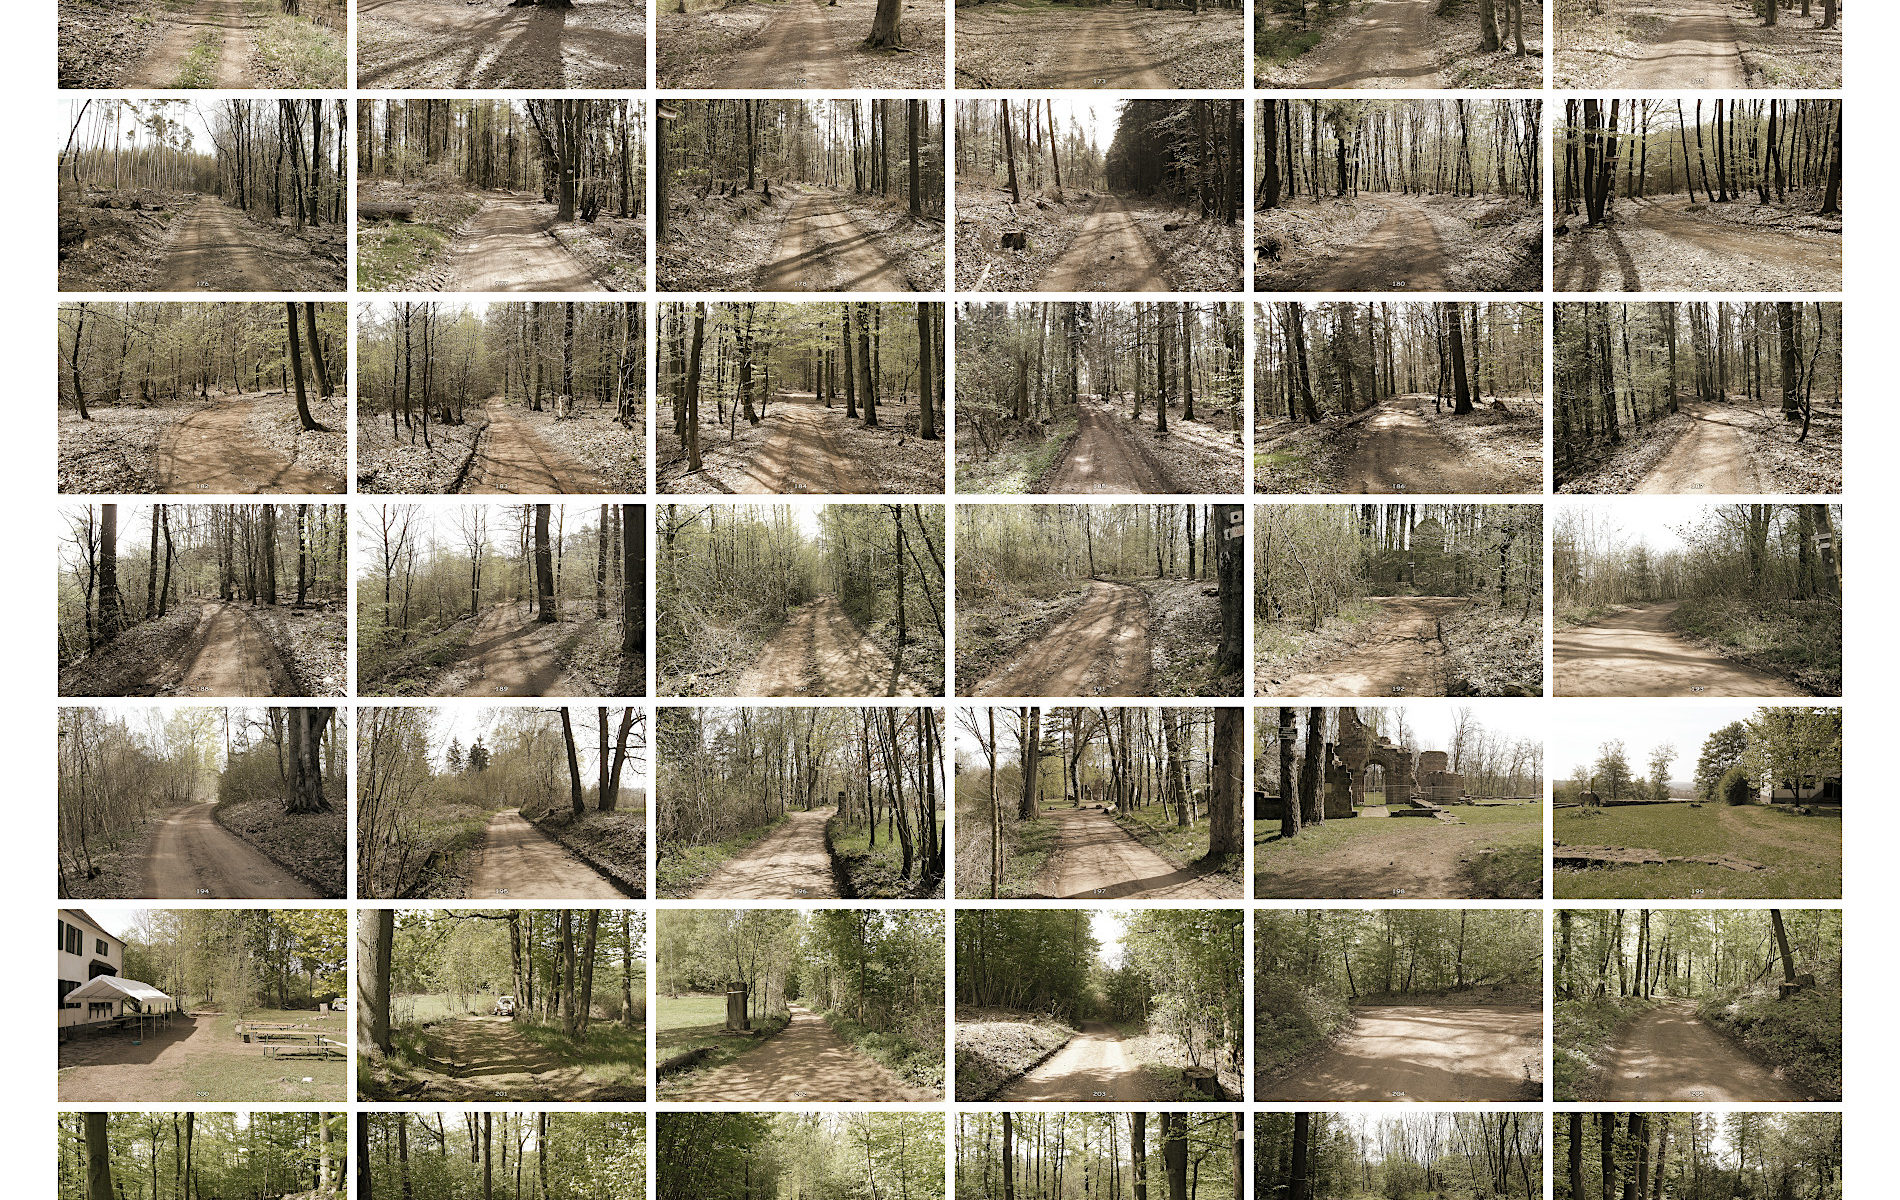 Bildcollage mit 6 mal 9 in einem Raster gesetzten Fotos von Waldwegen, stets in Richtung Wegeverlauf. Die Bilder haben eine leichte Sepiatönung und zeigen frühlinghaften Wald mit noch lichtem Blattwerk